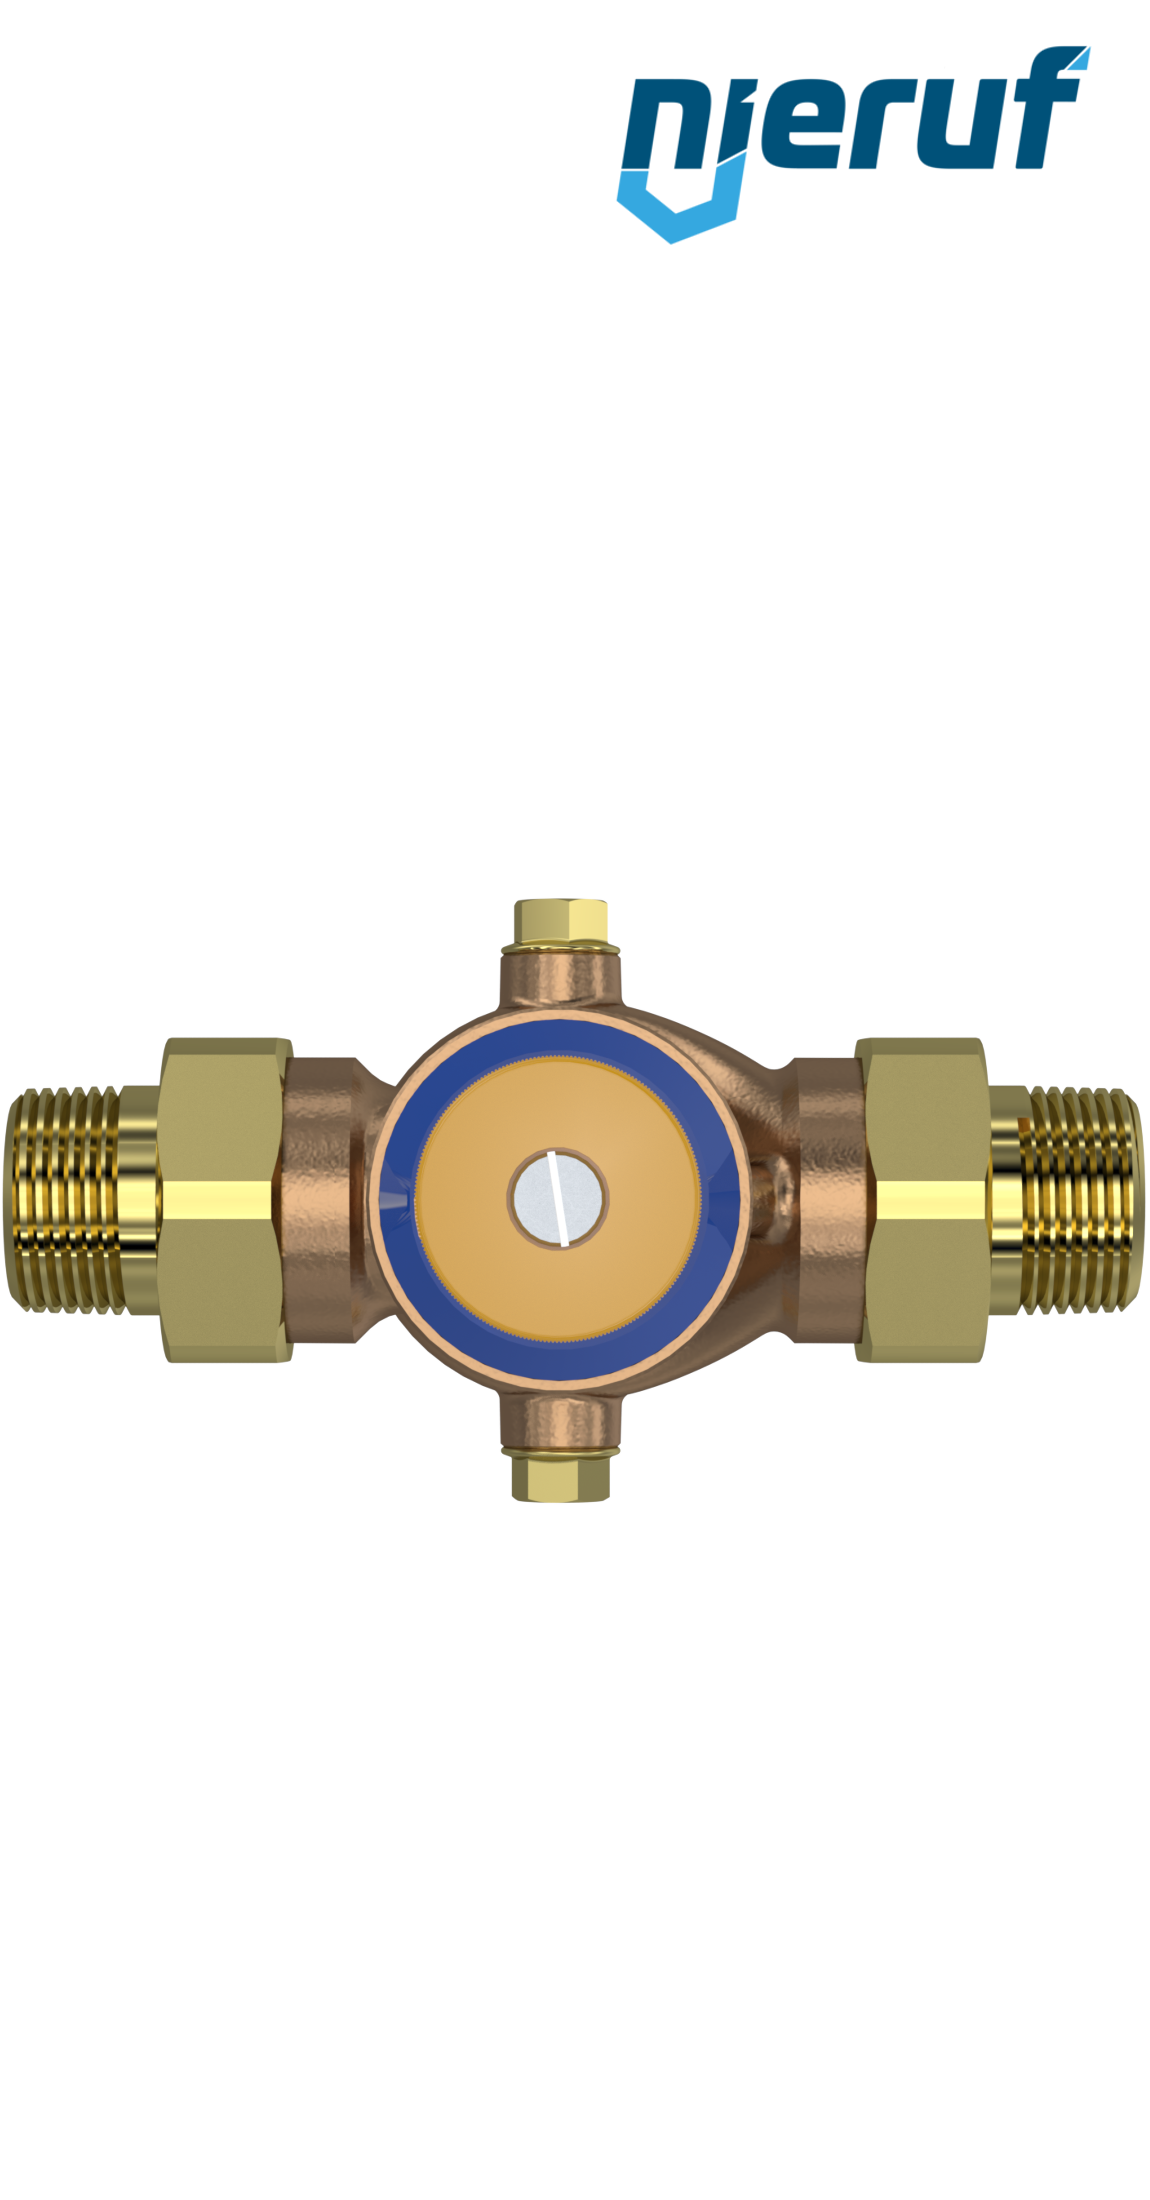 Réducteur pression eau RP25 .¾